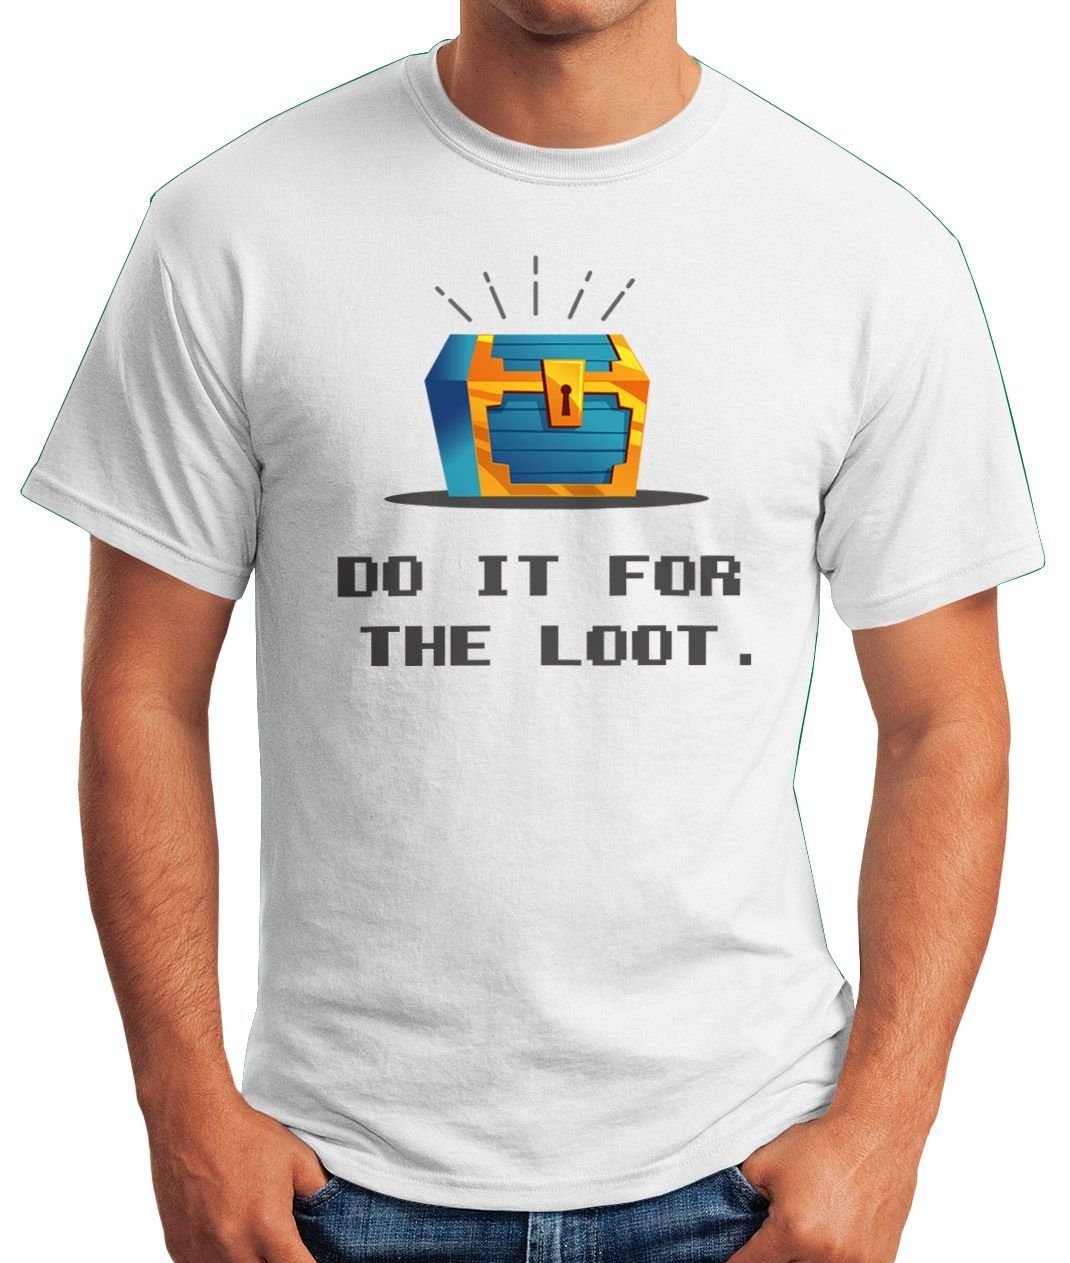 T-Shirt Herren mit for Print-Shirt loot do weiß Gaming Moonworks® Nerds lustig und Spruch Zocker Schatztruhe MoonWorks it Fun-Shirt the Motiv Print